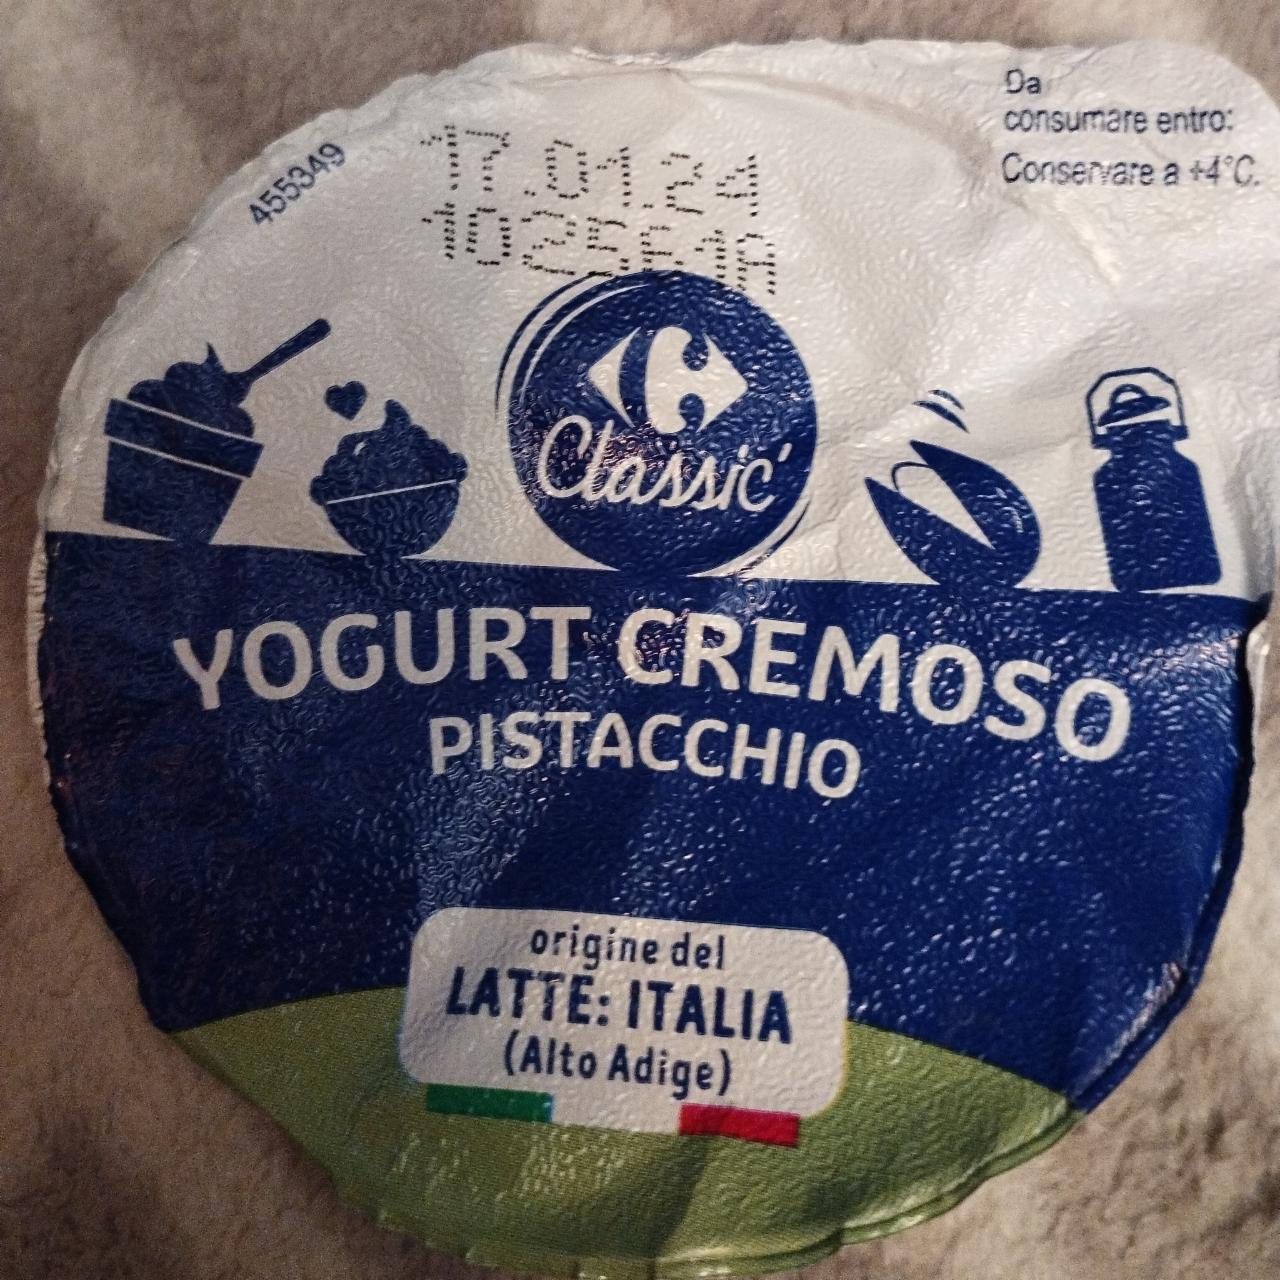 Fotografie - Yogurt cremoso pistacchio C Classic